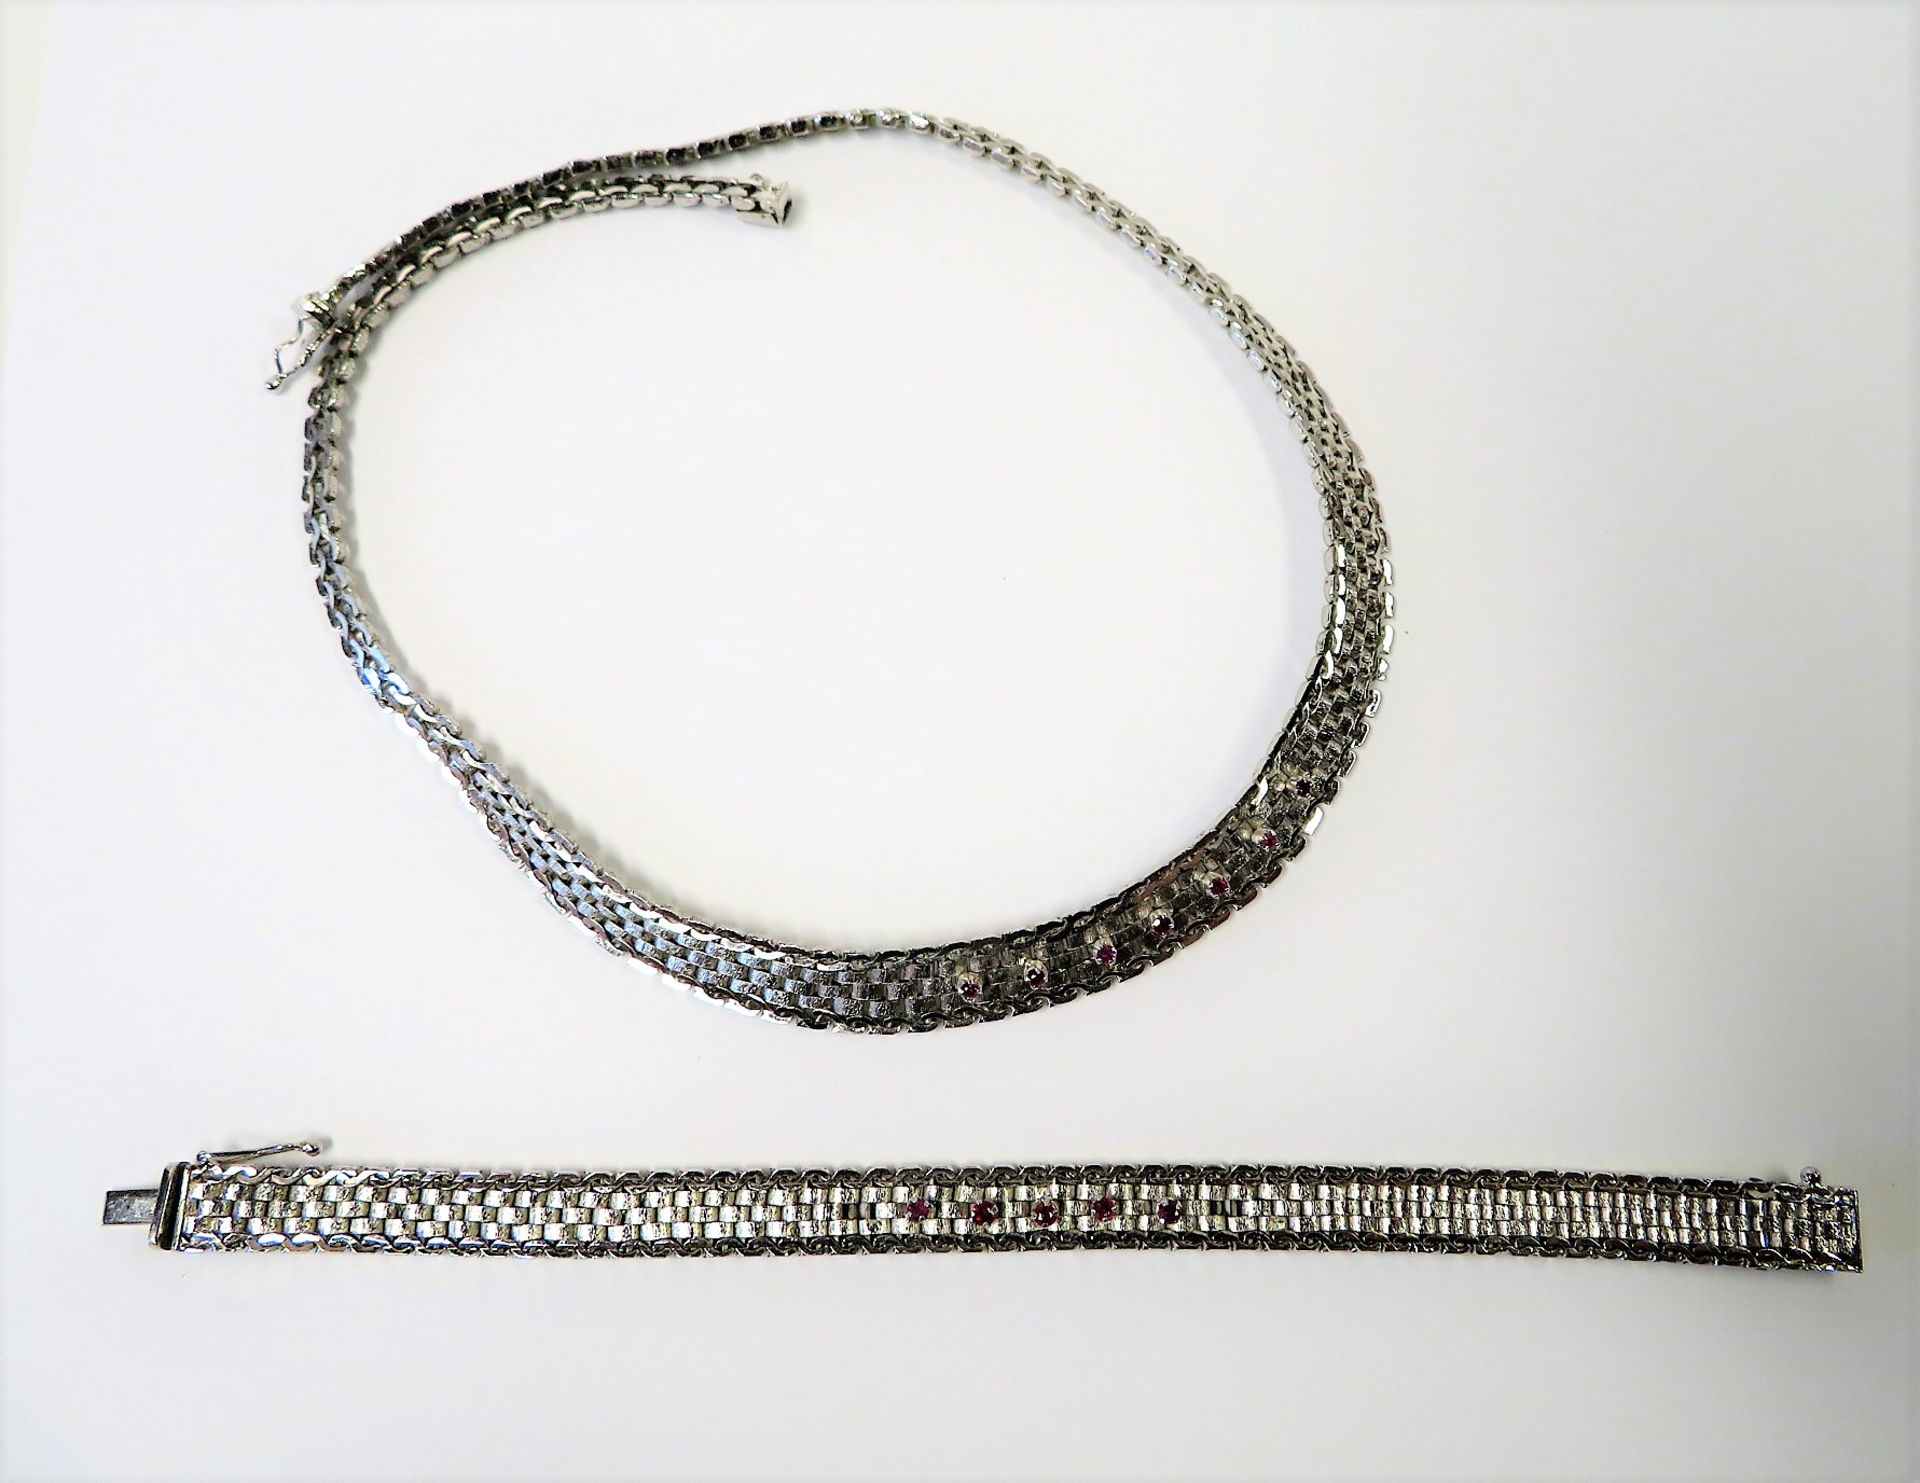 Collier und Armband, Rubinbesatz, 835er Silber, gepunzt, 49 g, Collier l 40 cm Armband l 18,5 cm.